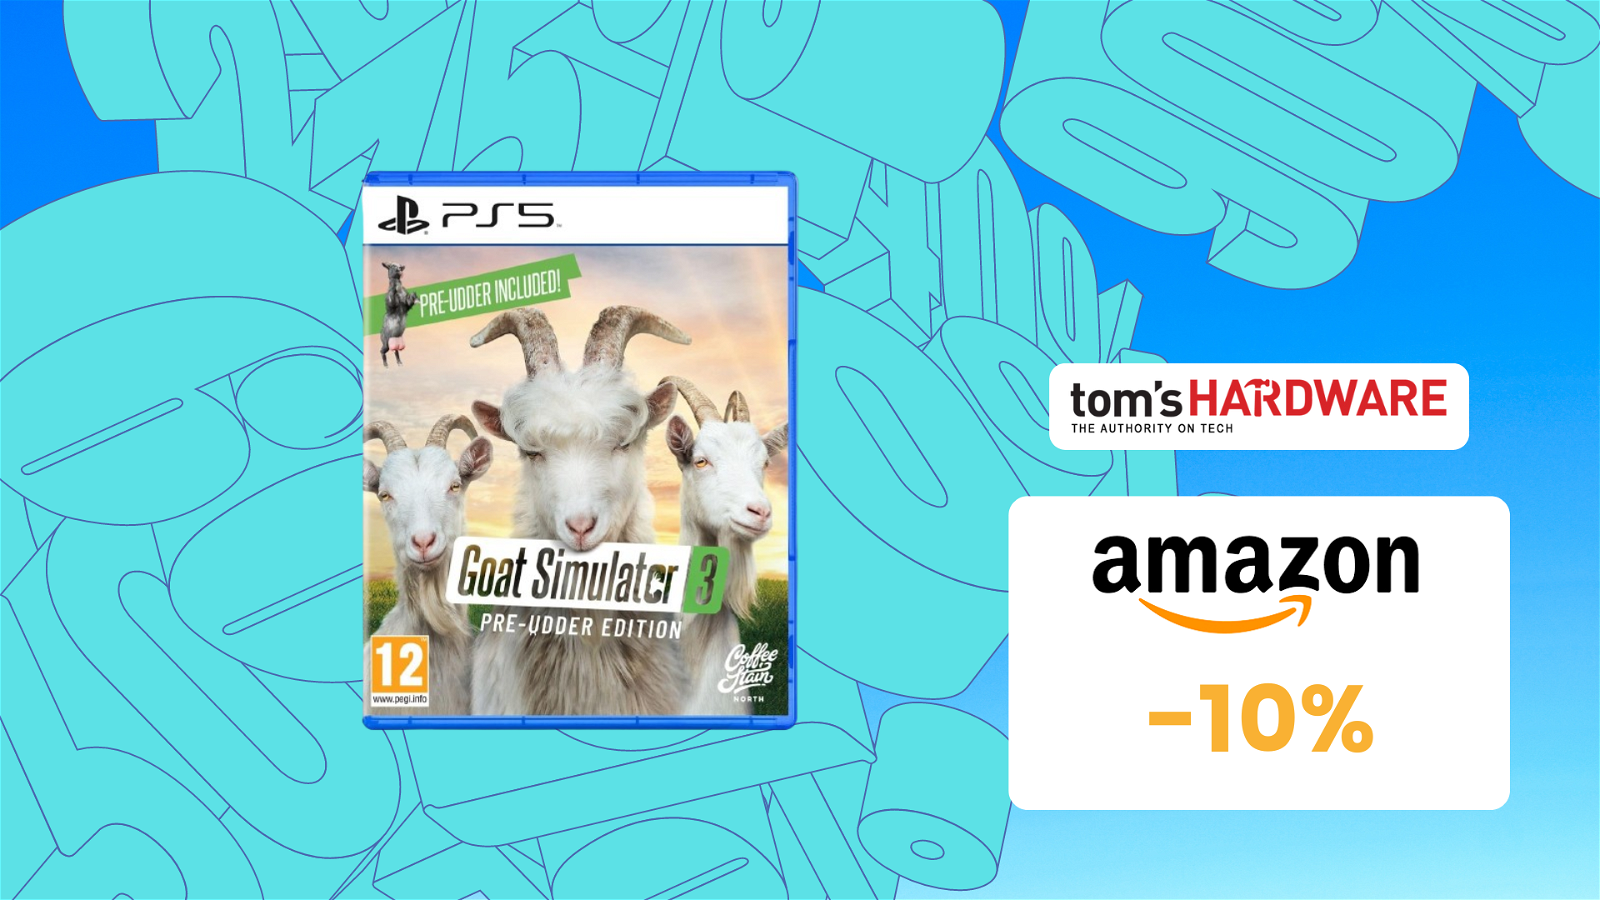 Immagine di SVUOTATUTTO AMAZON: Goat Simulator 3 Pre-Udder Edition per PS5 a soli 18€!